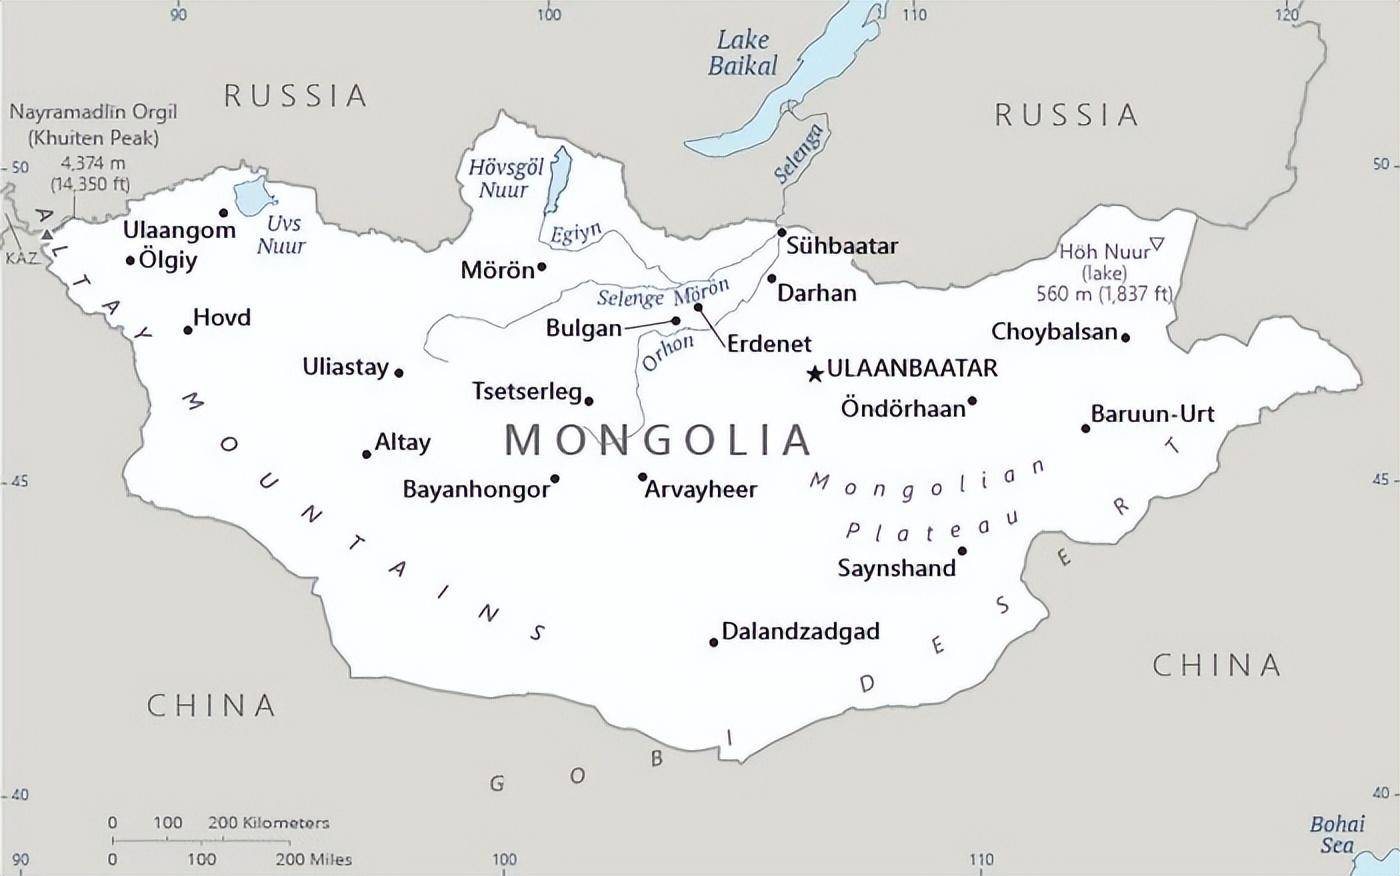 【蒙古国在地理上只有两个邻国】而印度想要走俄罗斯,则有2条潜在的